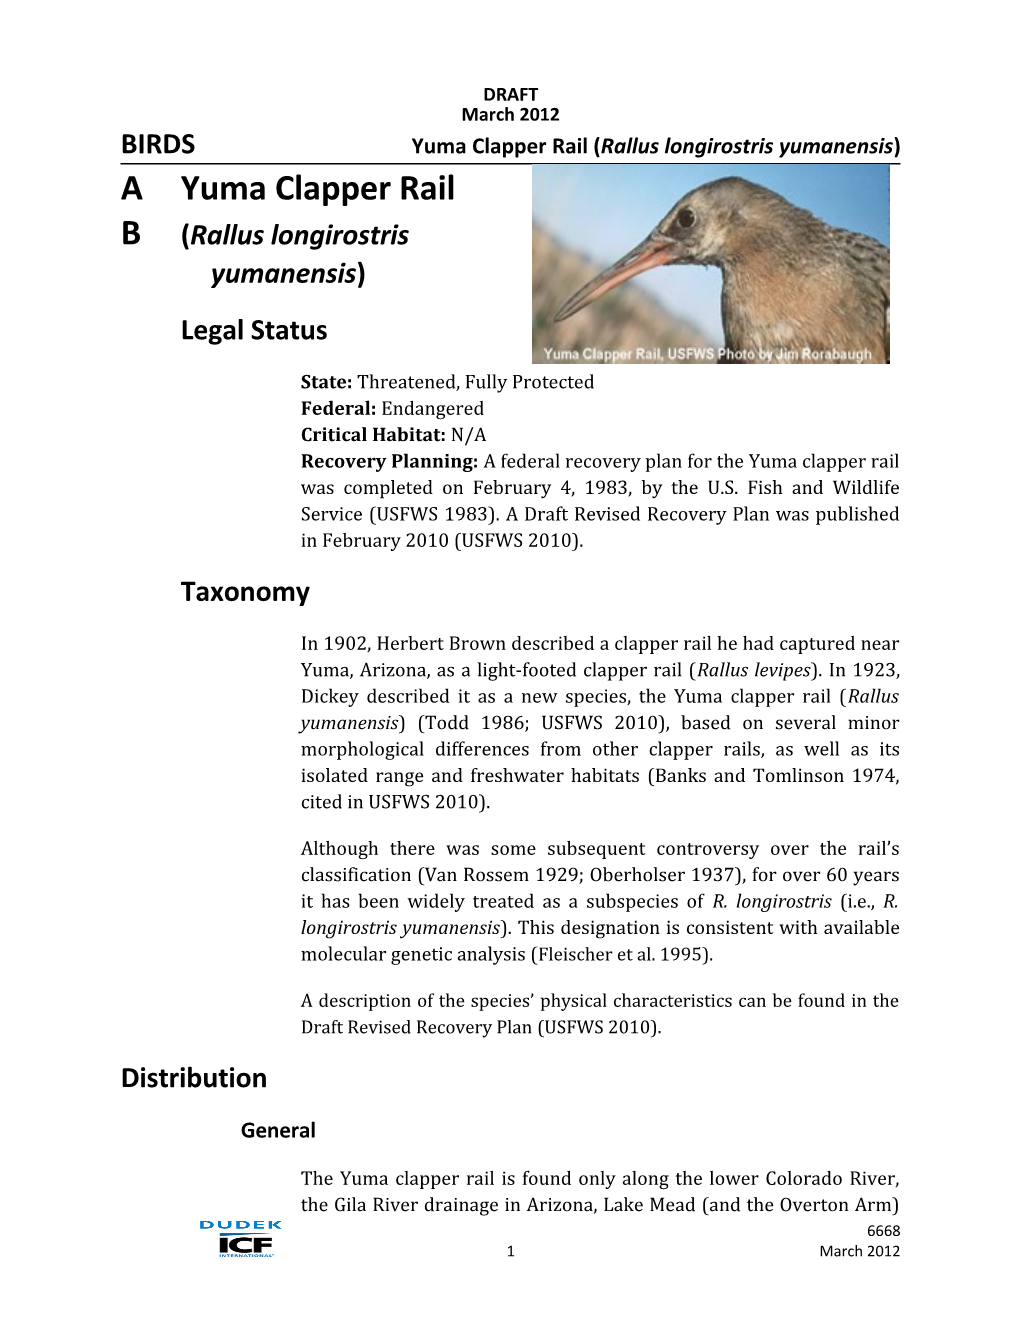 DRECP Species Account - Yuma Clapper Rail